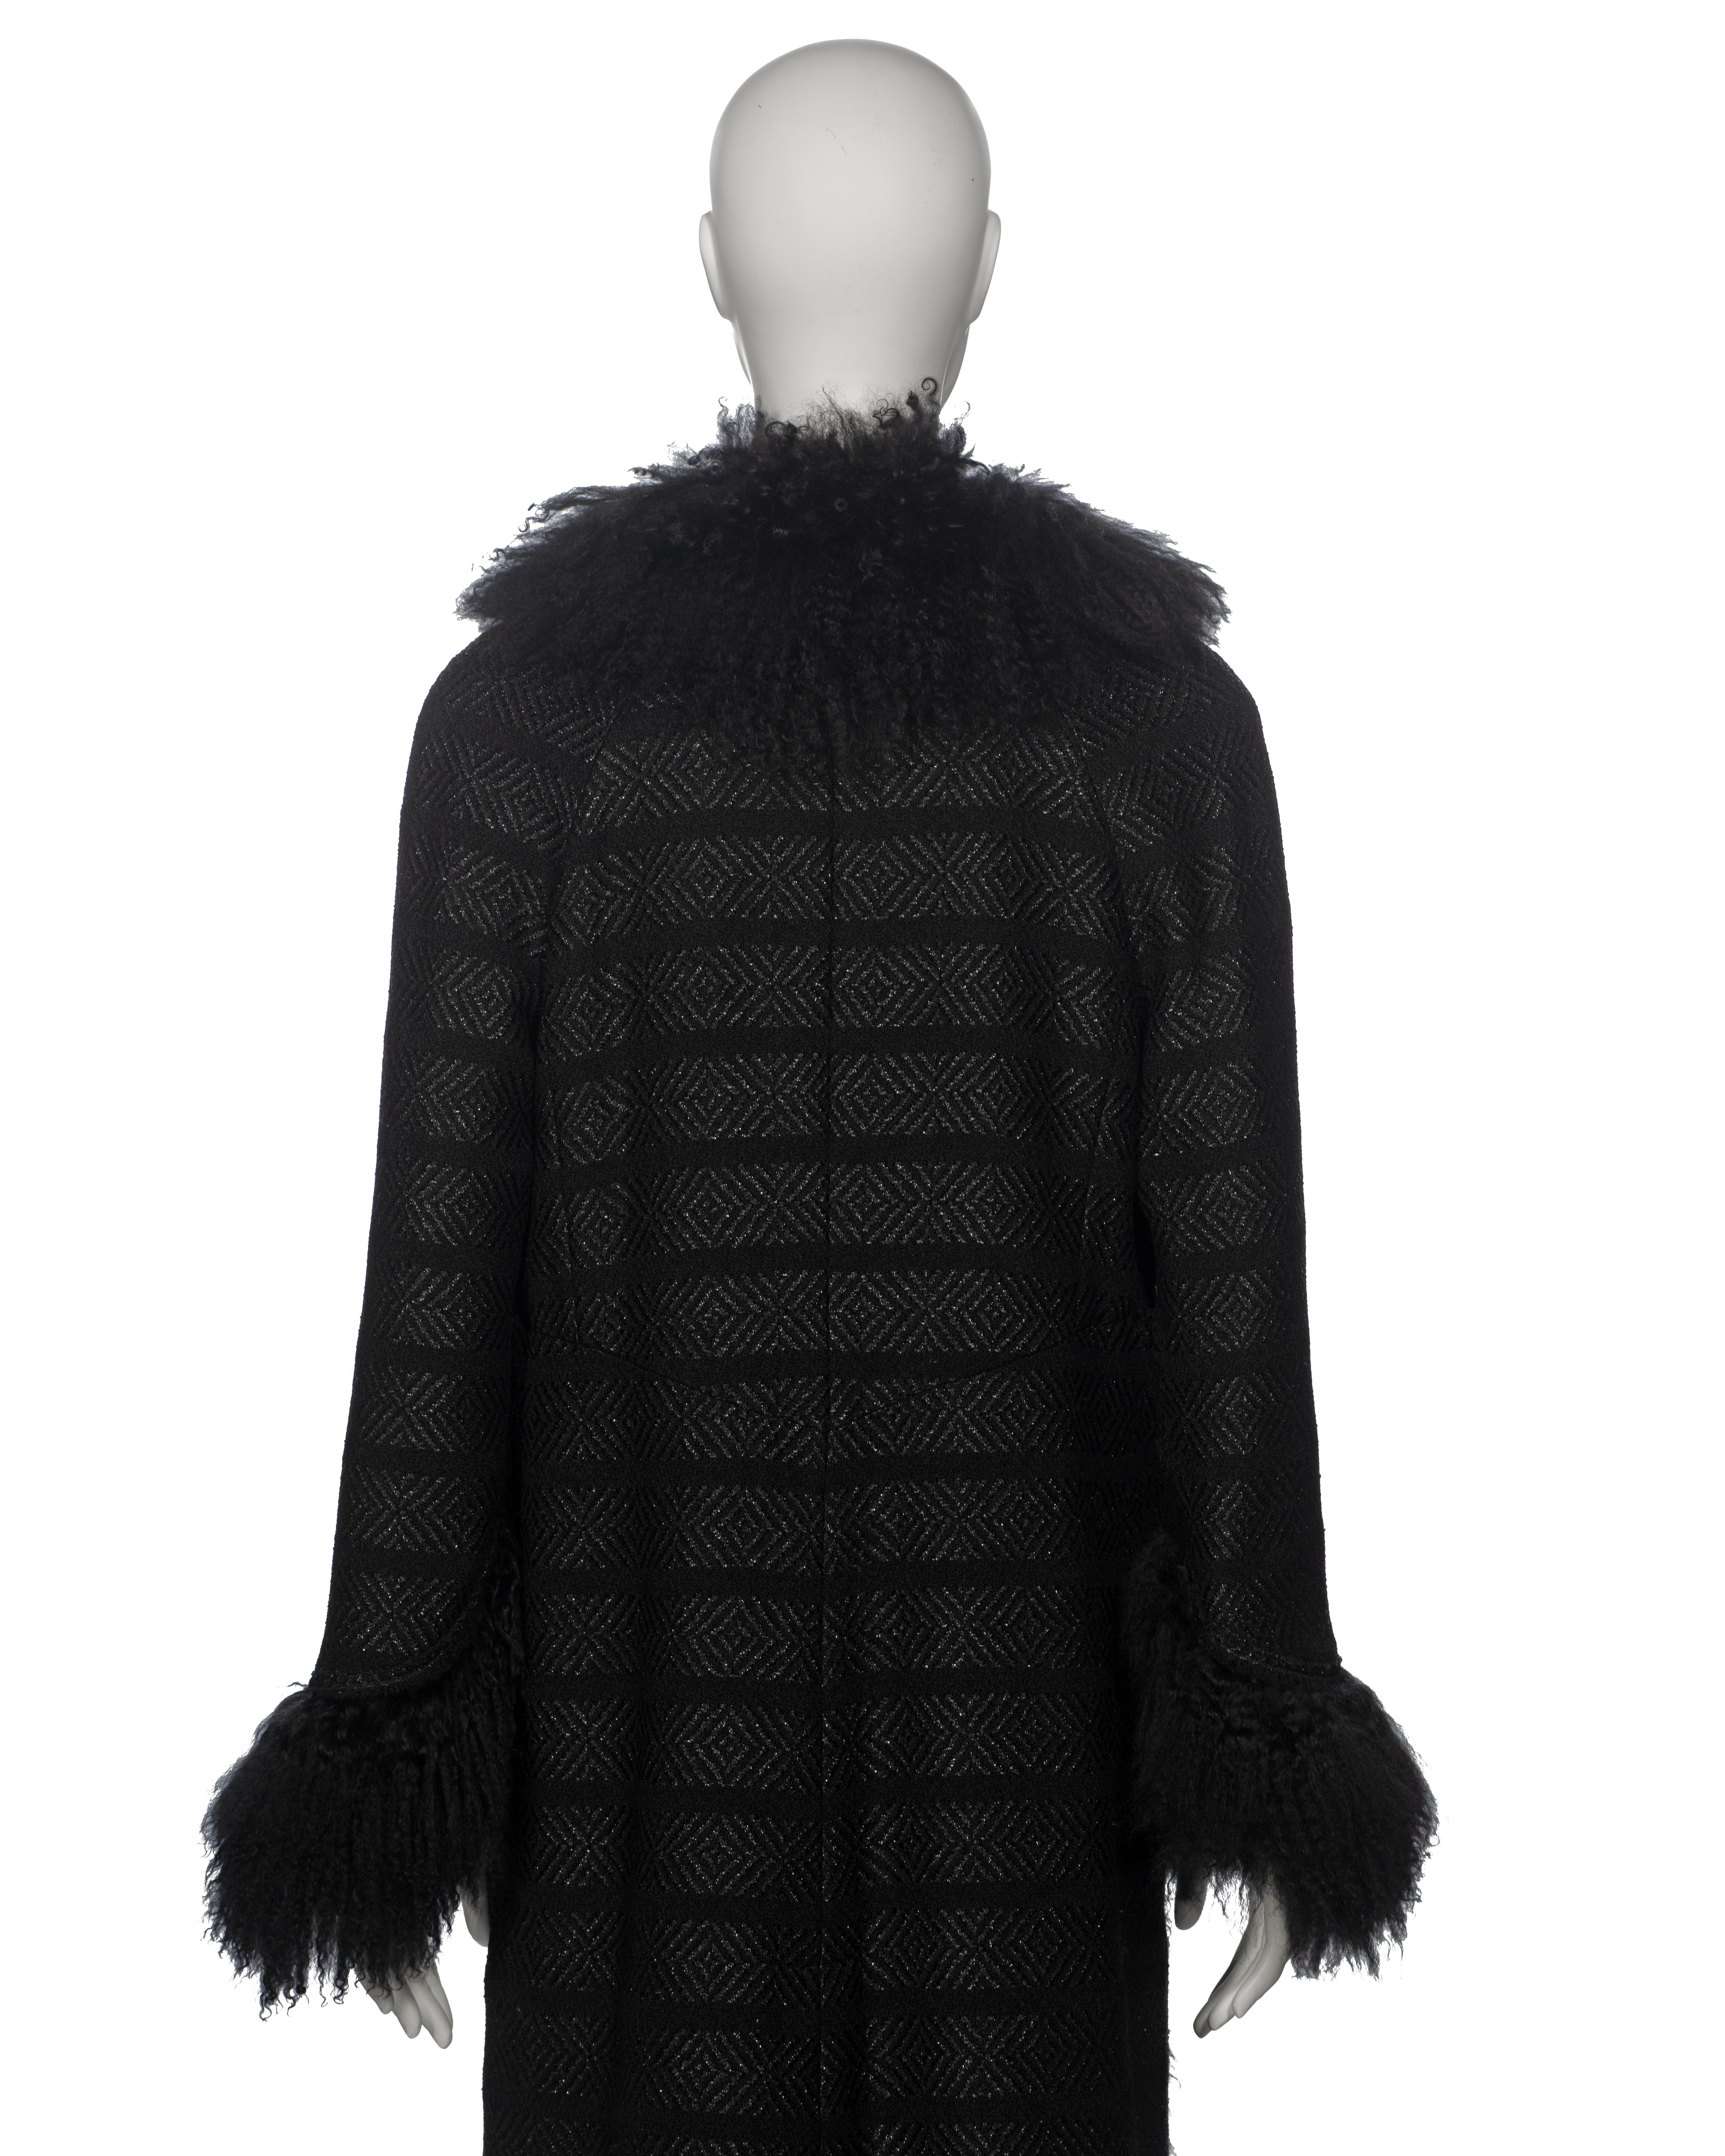 Chanel by Karl Lagerfeld Black Tweed Wool and Tibetan Lamb Fur Coat, fw 2008 7